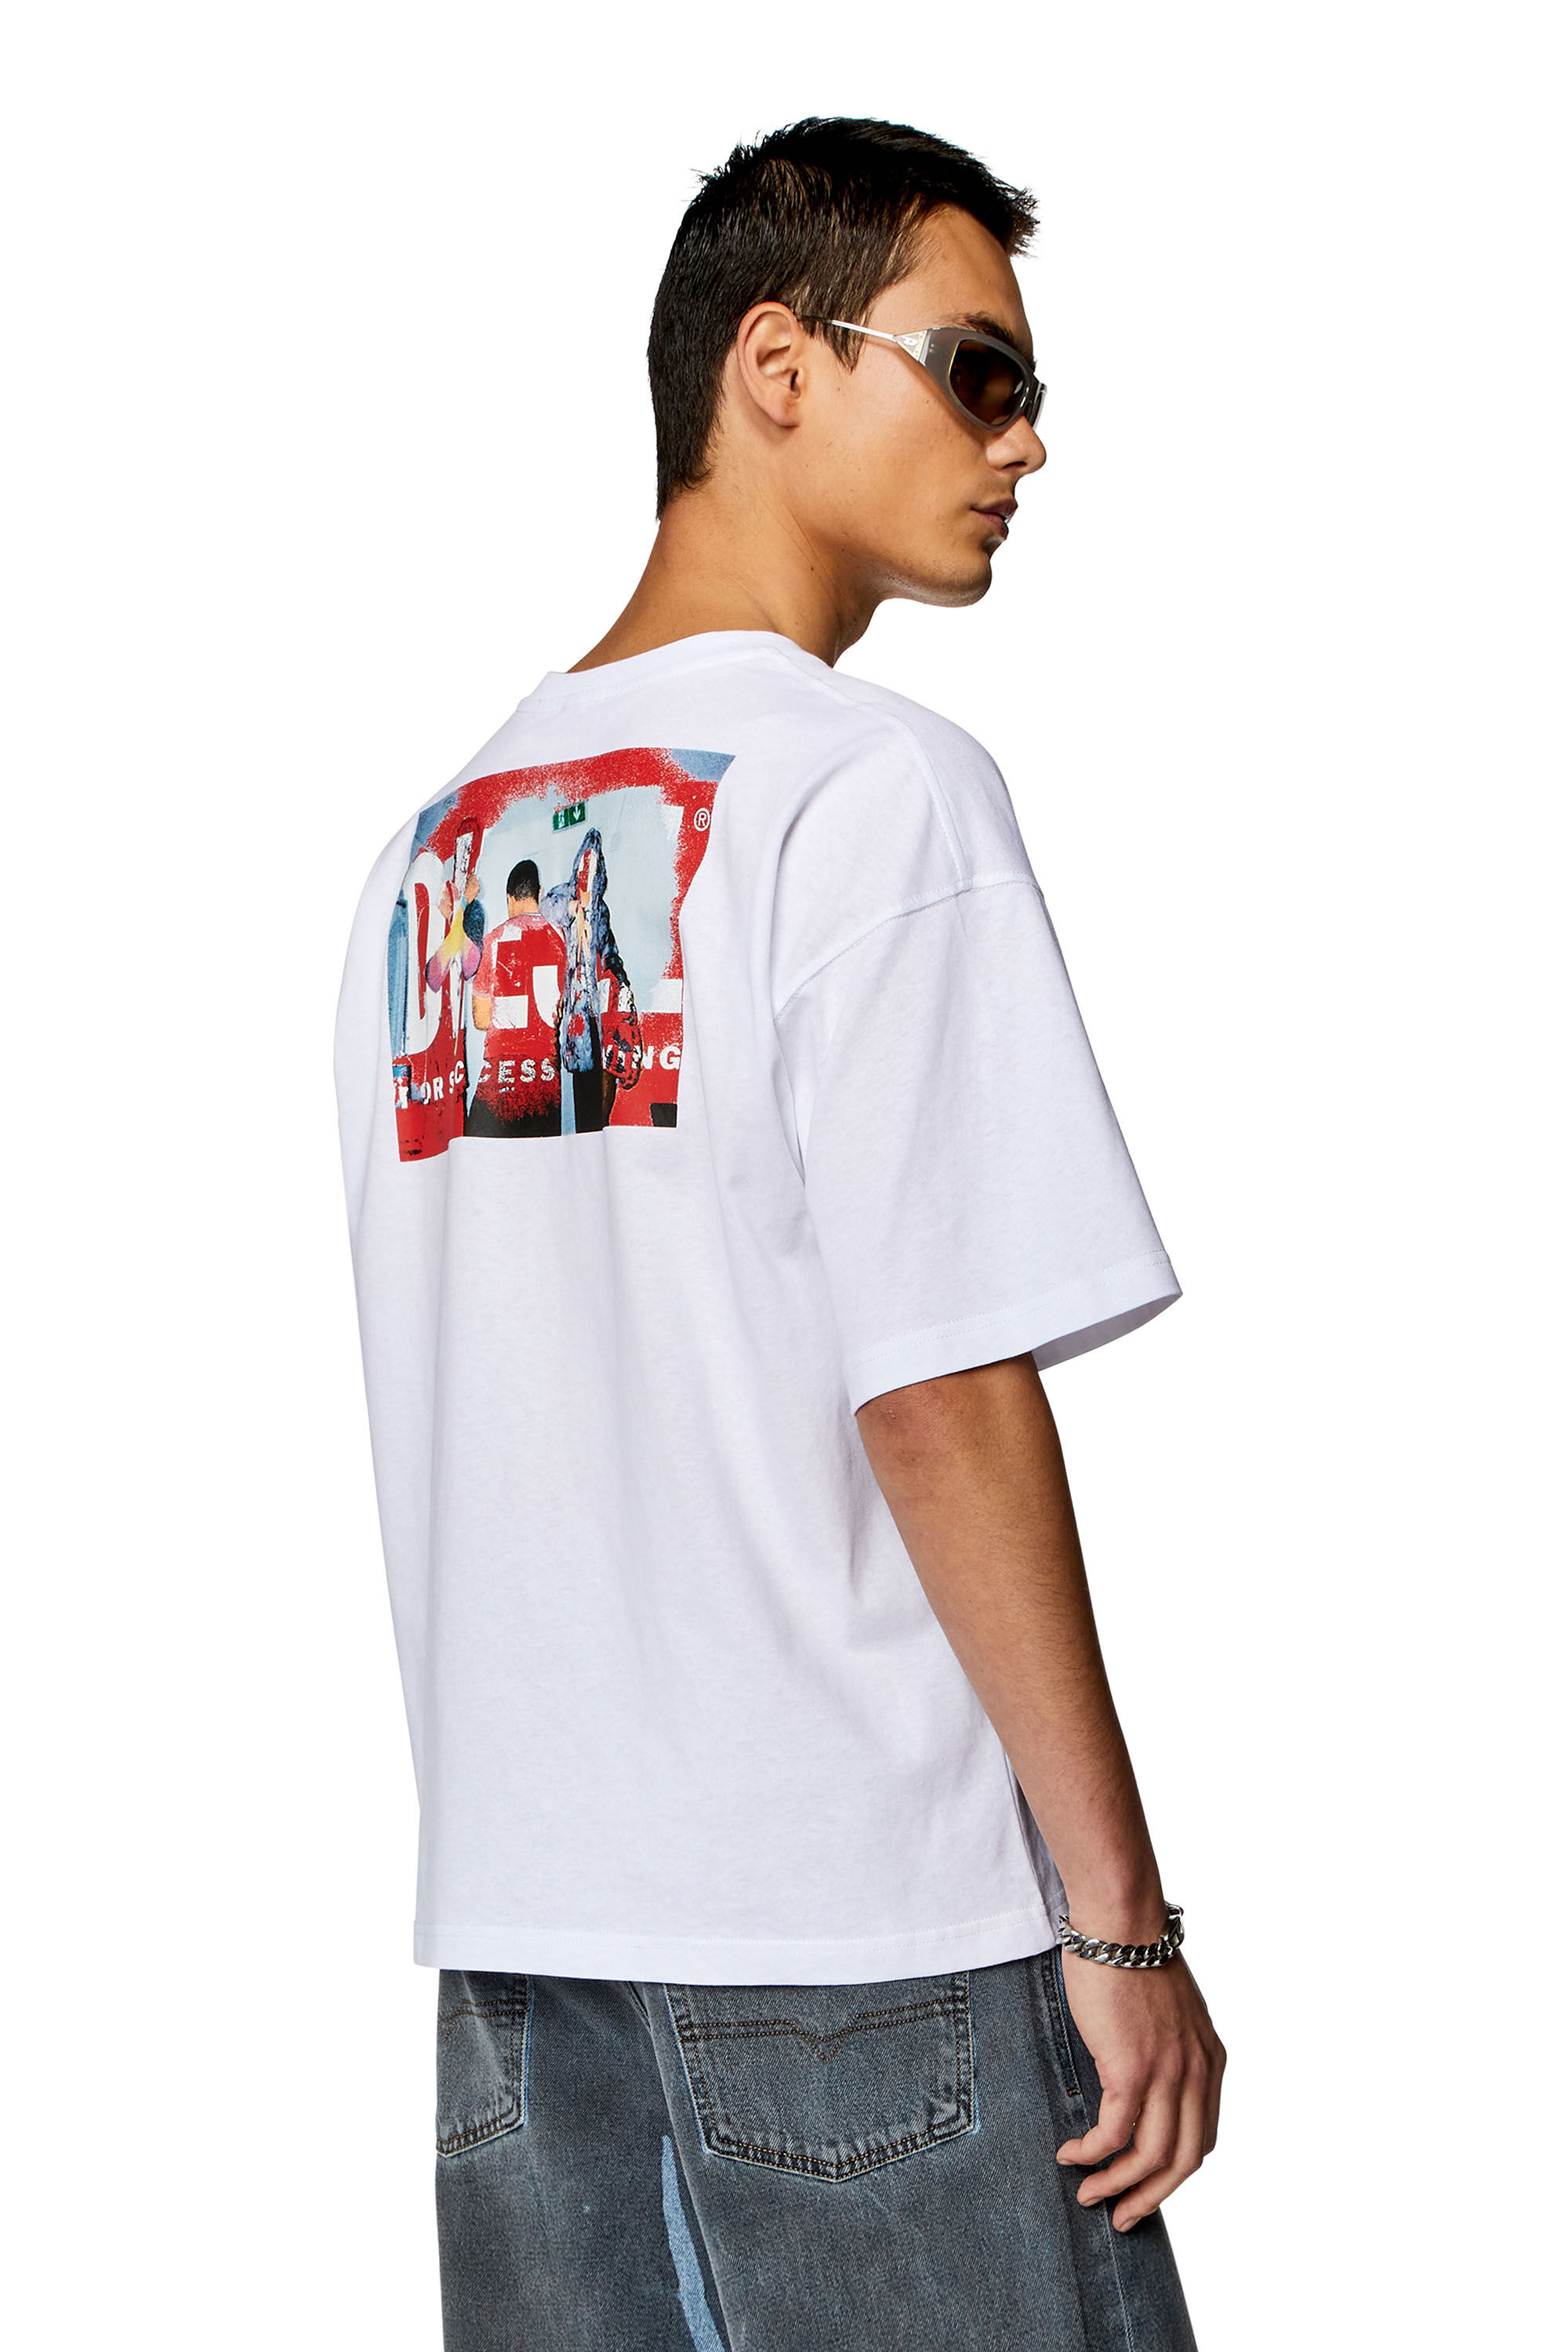 Diesel - T-BOXT-N11, Homme T-shirt avec logo imprimé photo in Blanc - Image 3